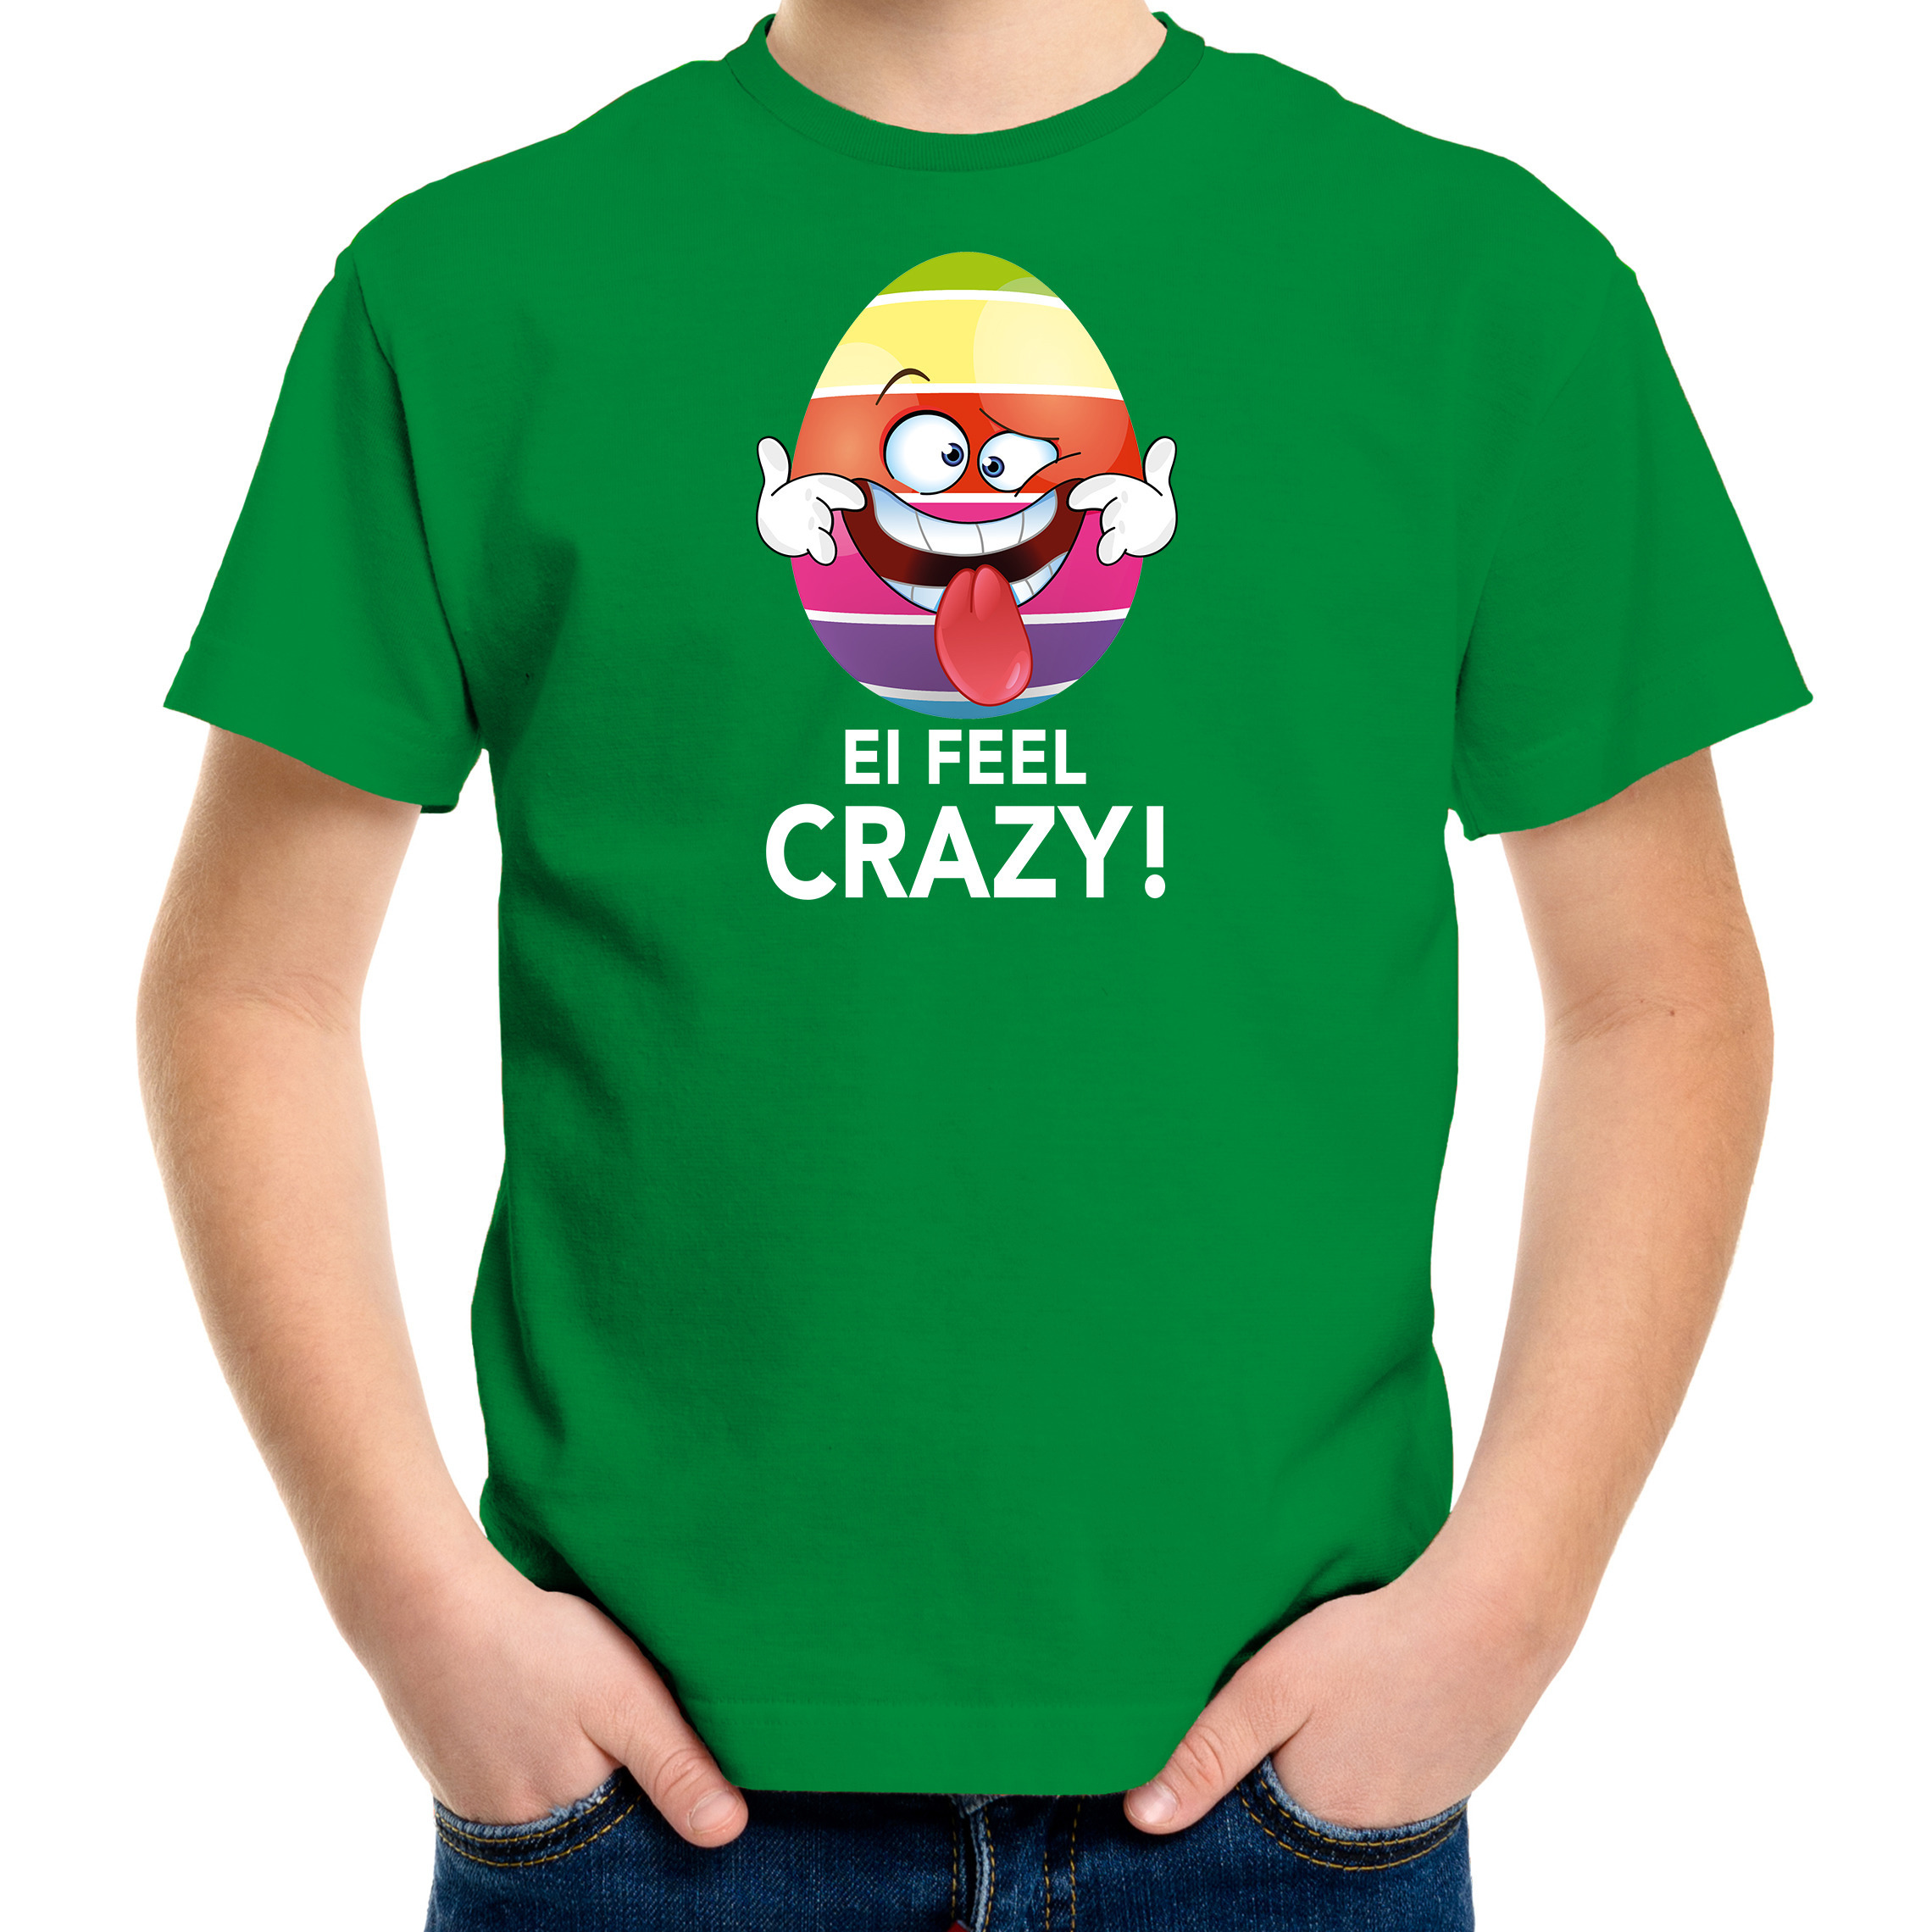 Vrolijk Paasei ei feel crazy t-shirt groen voor kinderen Paas kleding-outfit